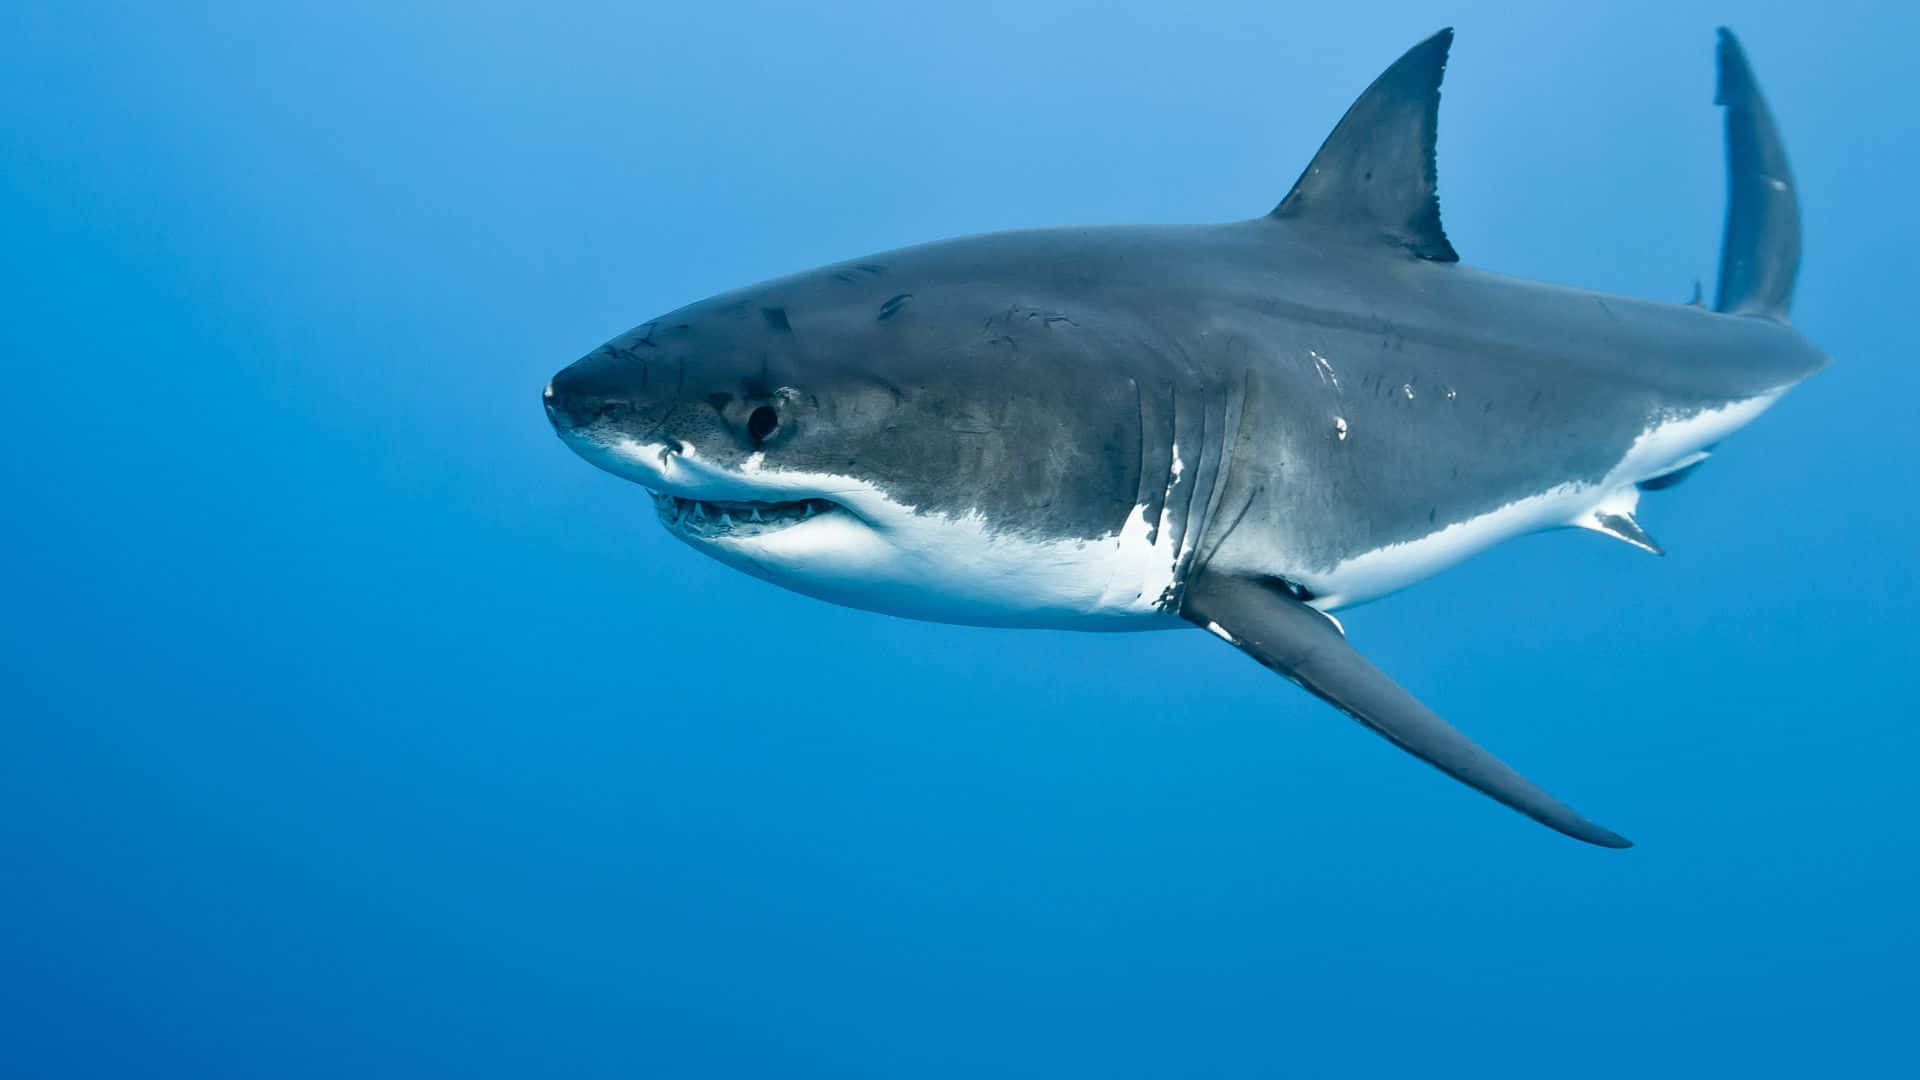 Black Great White Shark